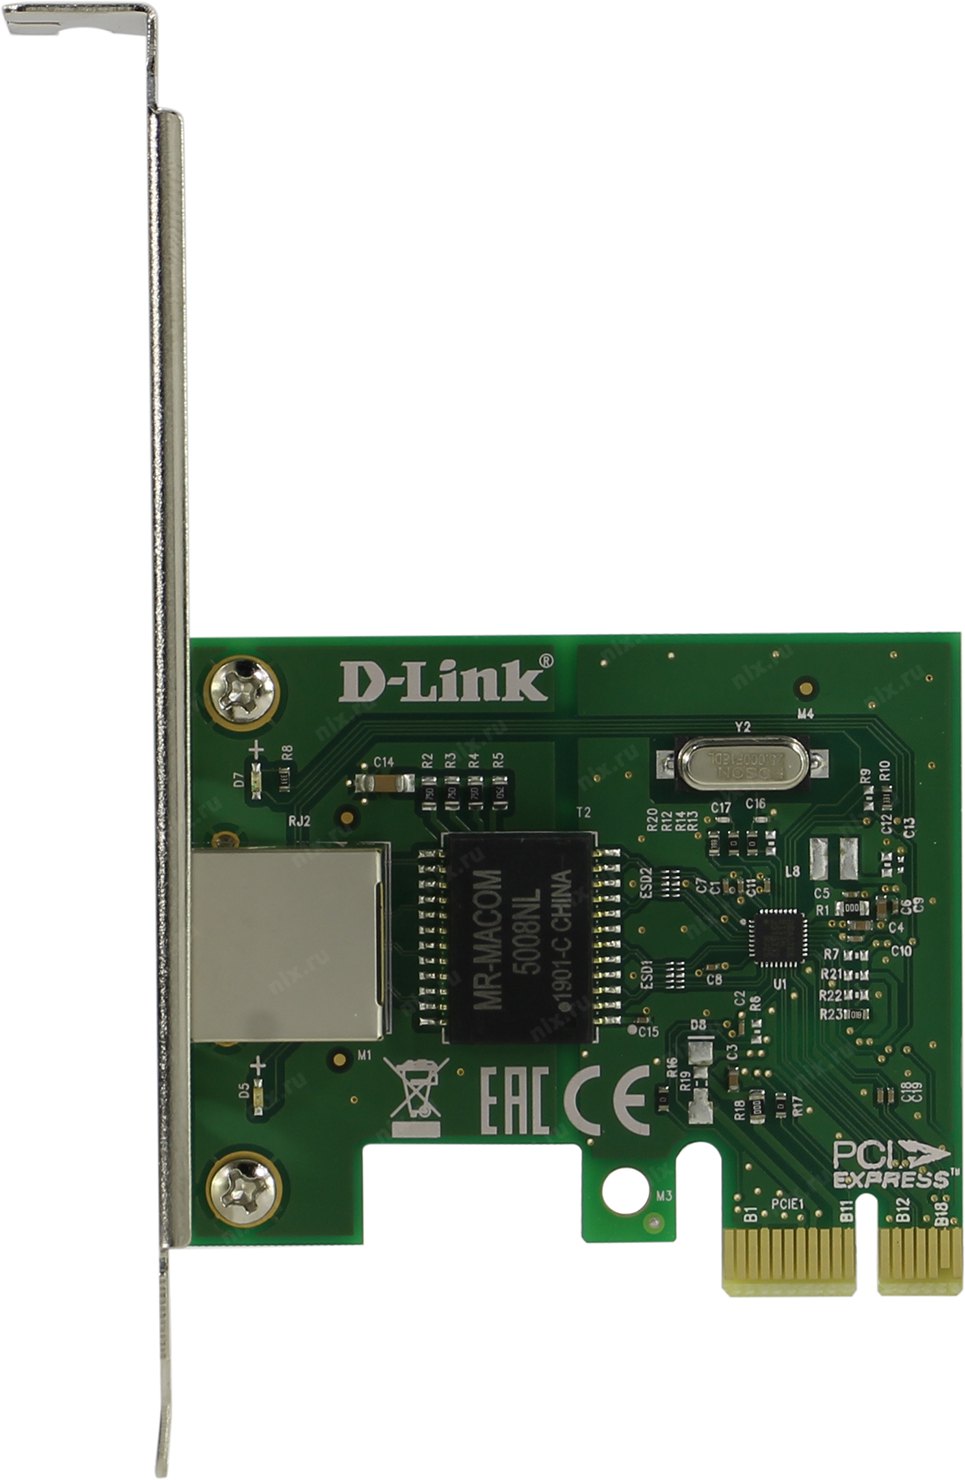 D link dge 560t. Сетевой адаптер d-link DGE-560t. Сетевой адаптер Gigabit Ethernet d-link DGE-560t PCI Express. Сетевая карта <DGE-560t>. DGE-560t.